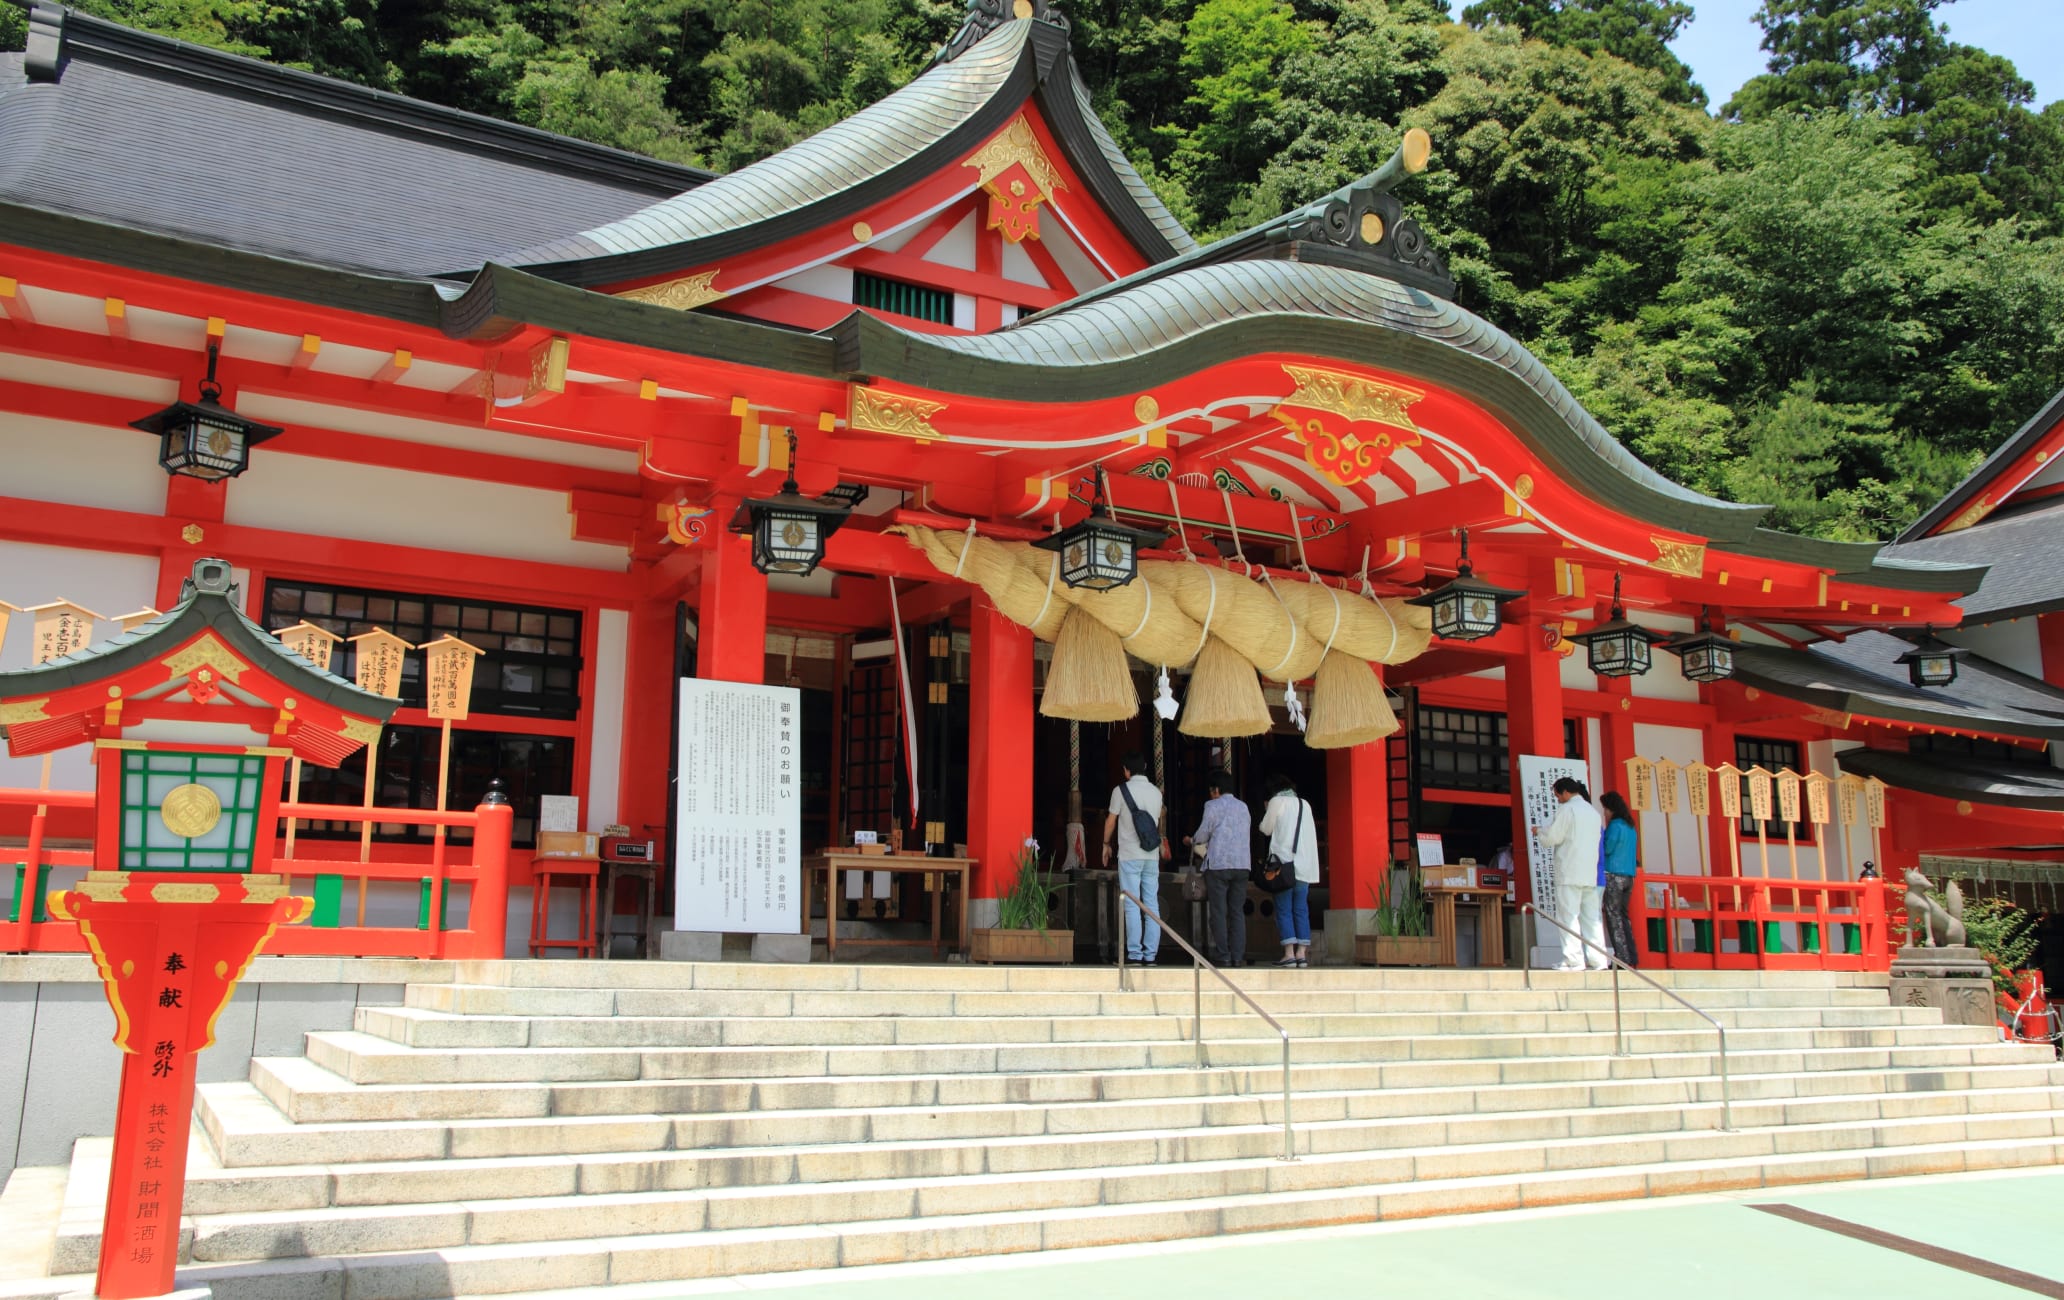 Taikodani Inari Shrine (Shimane)